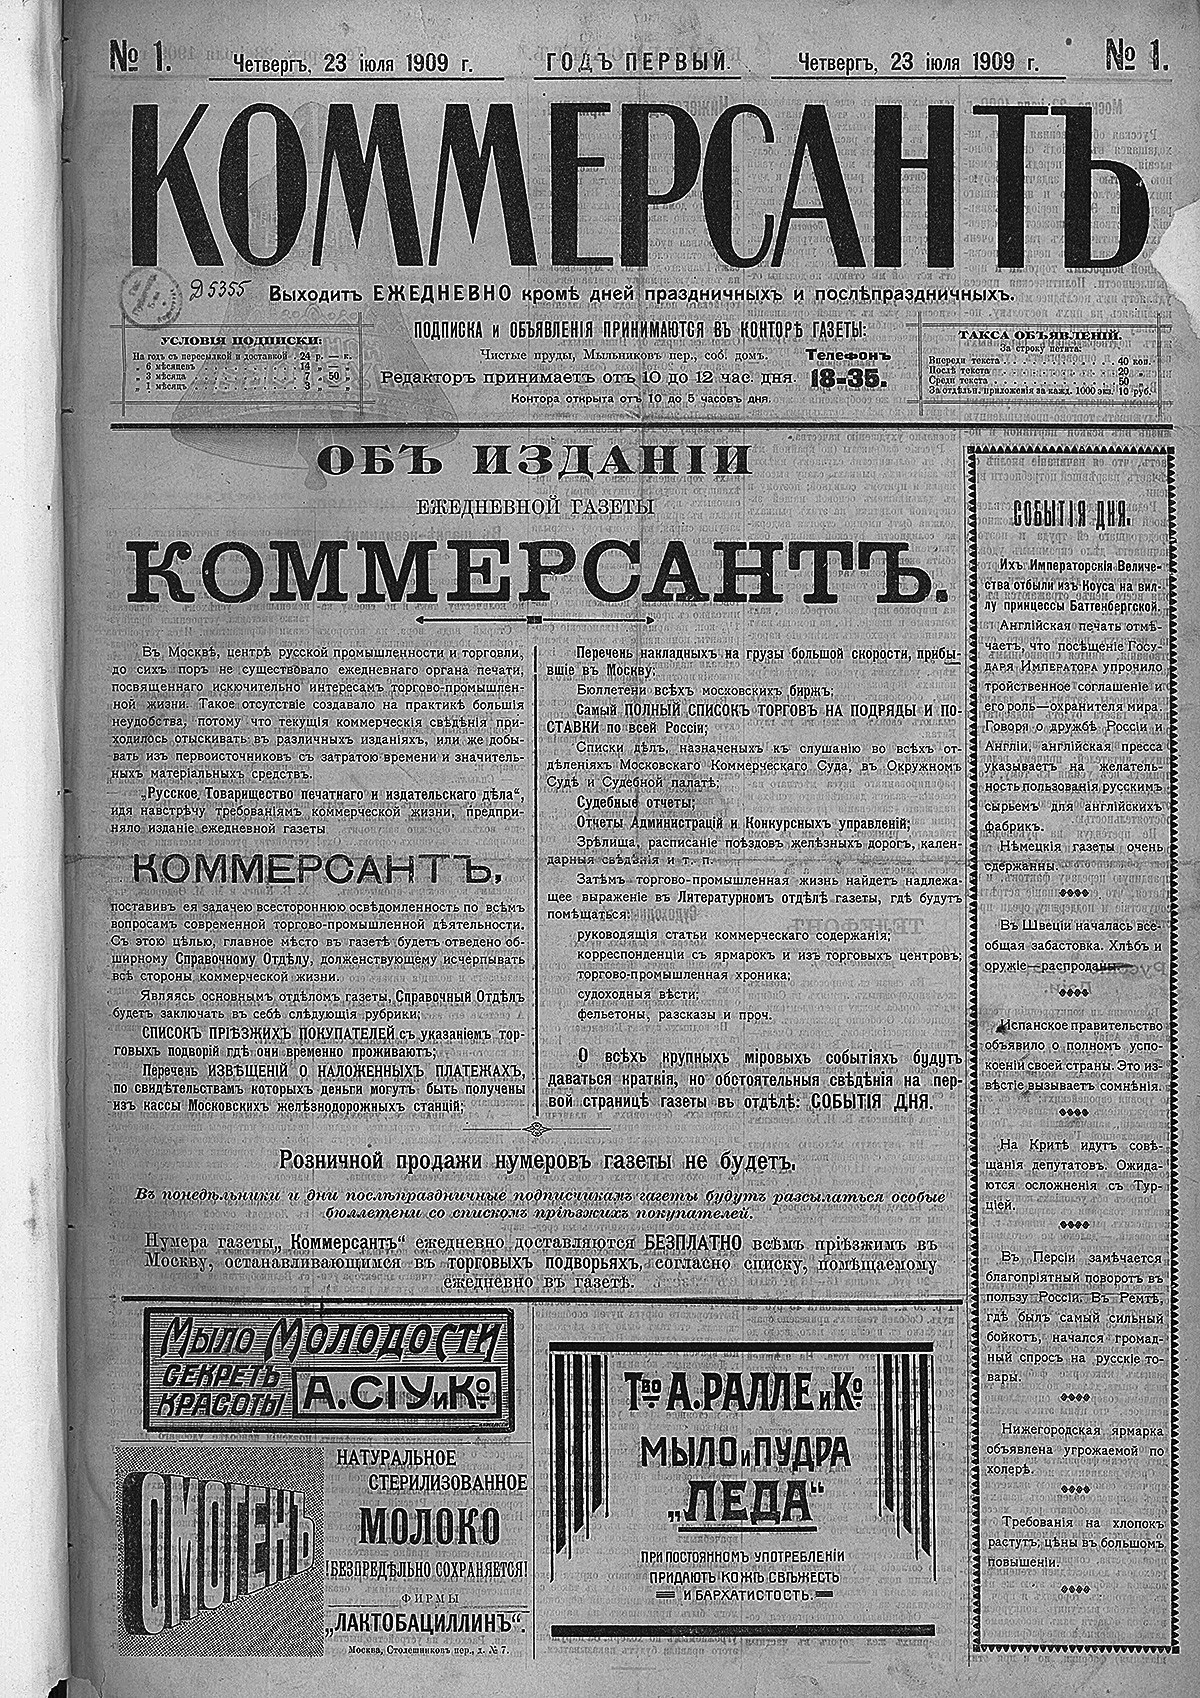 Une du premier numéro du journal Kommersant, daté du 23 juillet 1909